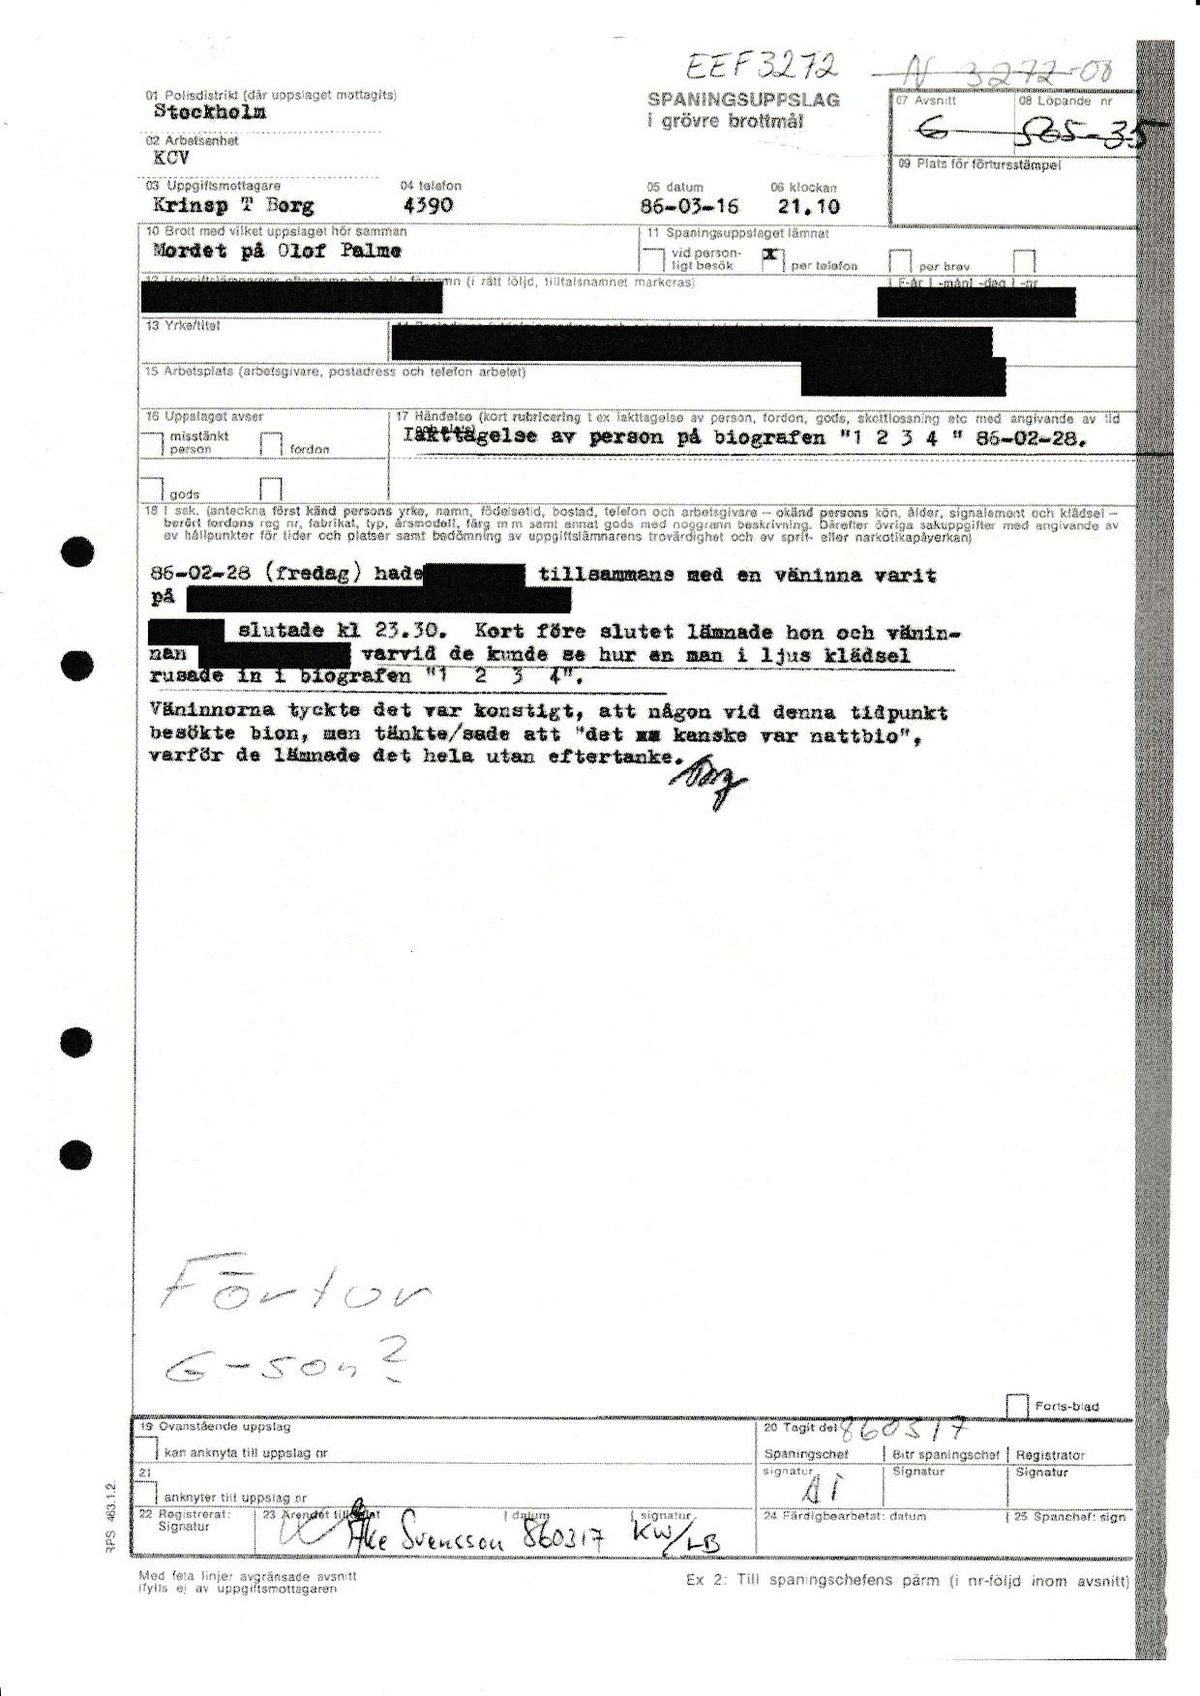 Pol-1986-03-16 2110 EEF3272-00 Två vänninor såg en man rusa in på en biograf.pdf